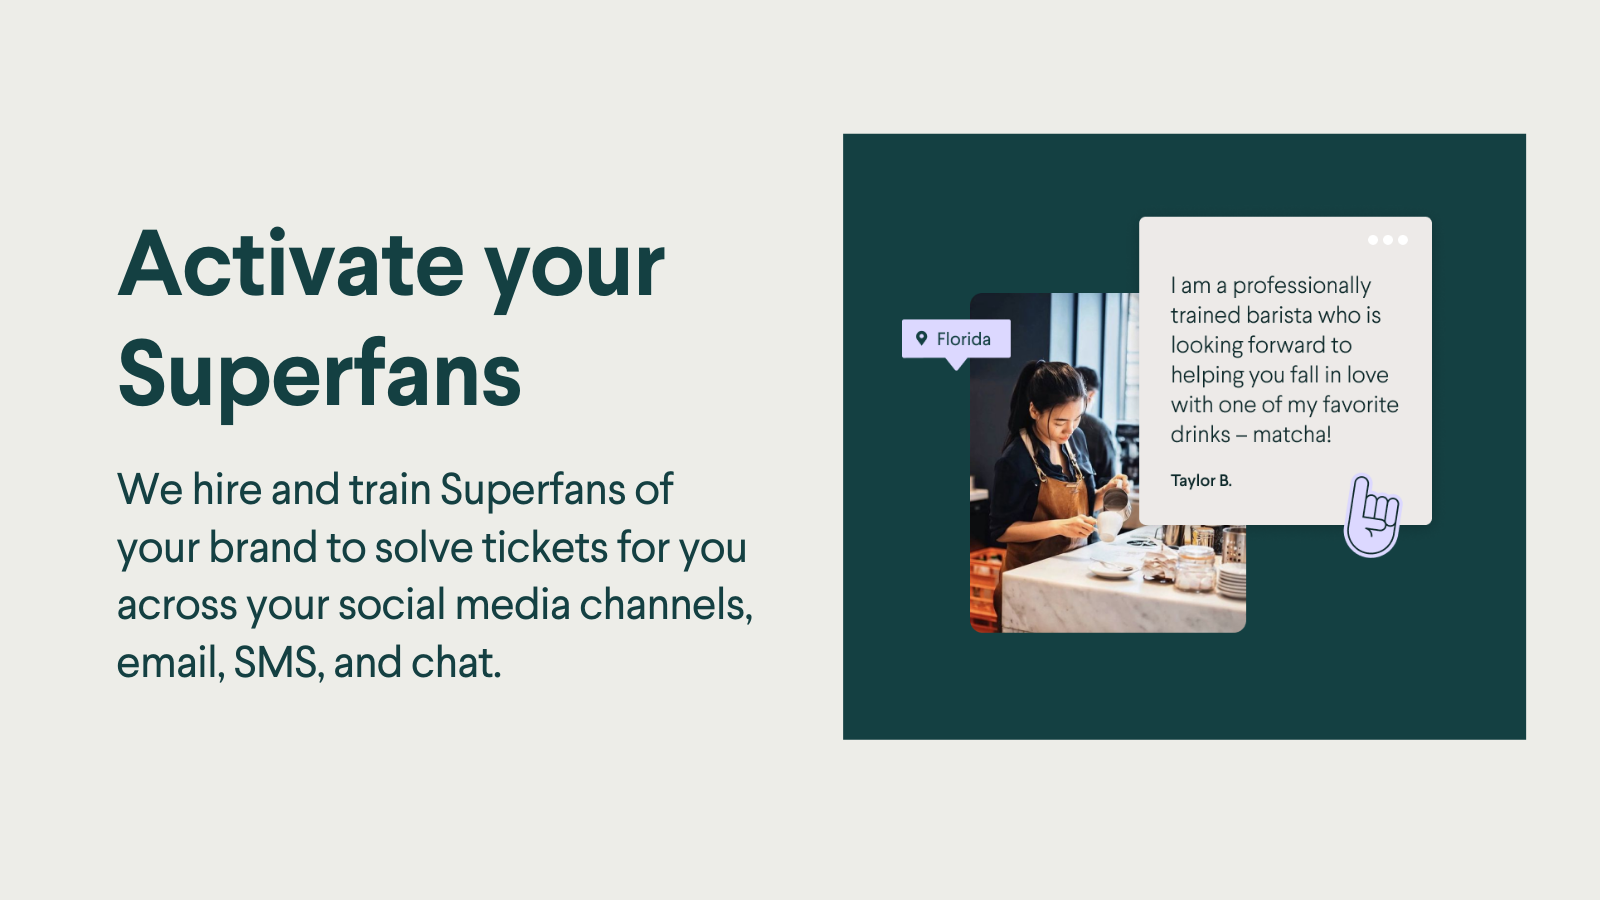 Entrenamos a los Superfans de tu marca para resolver tickets para ti